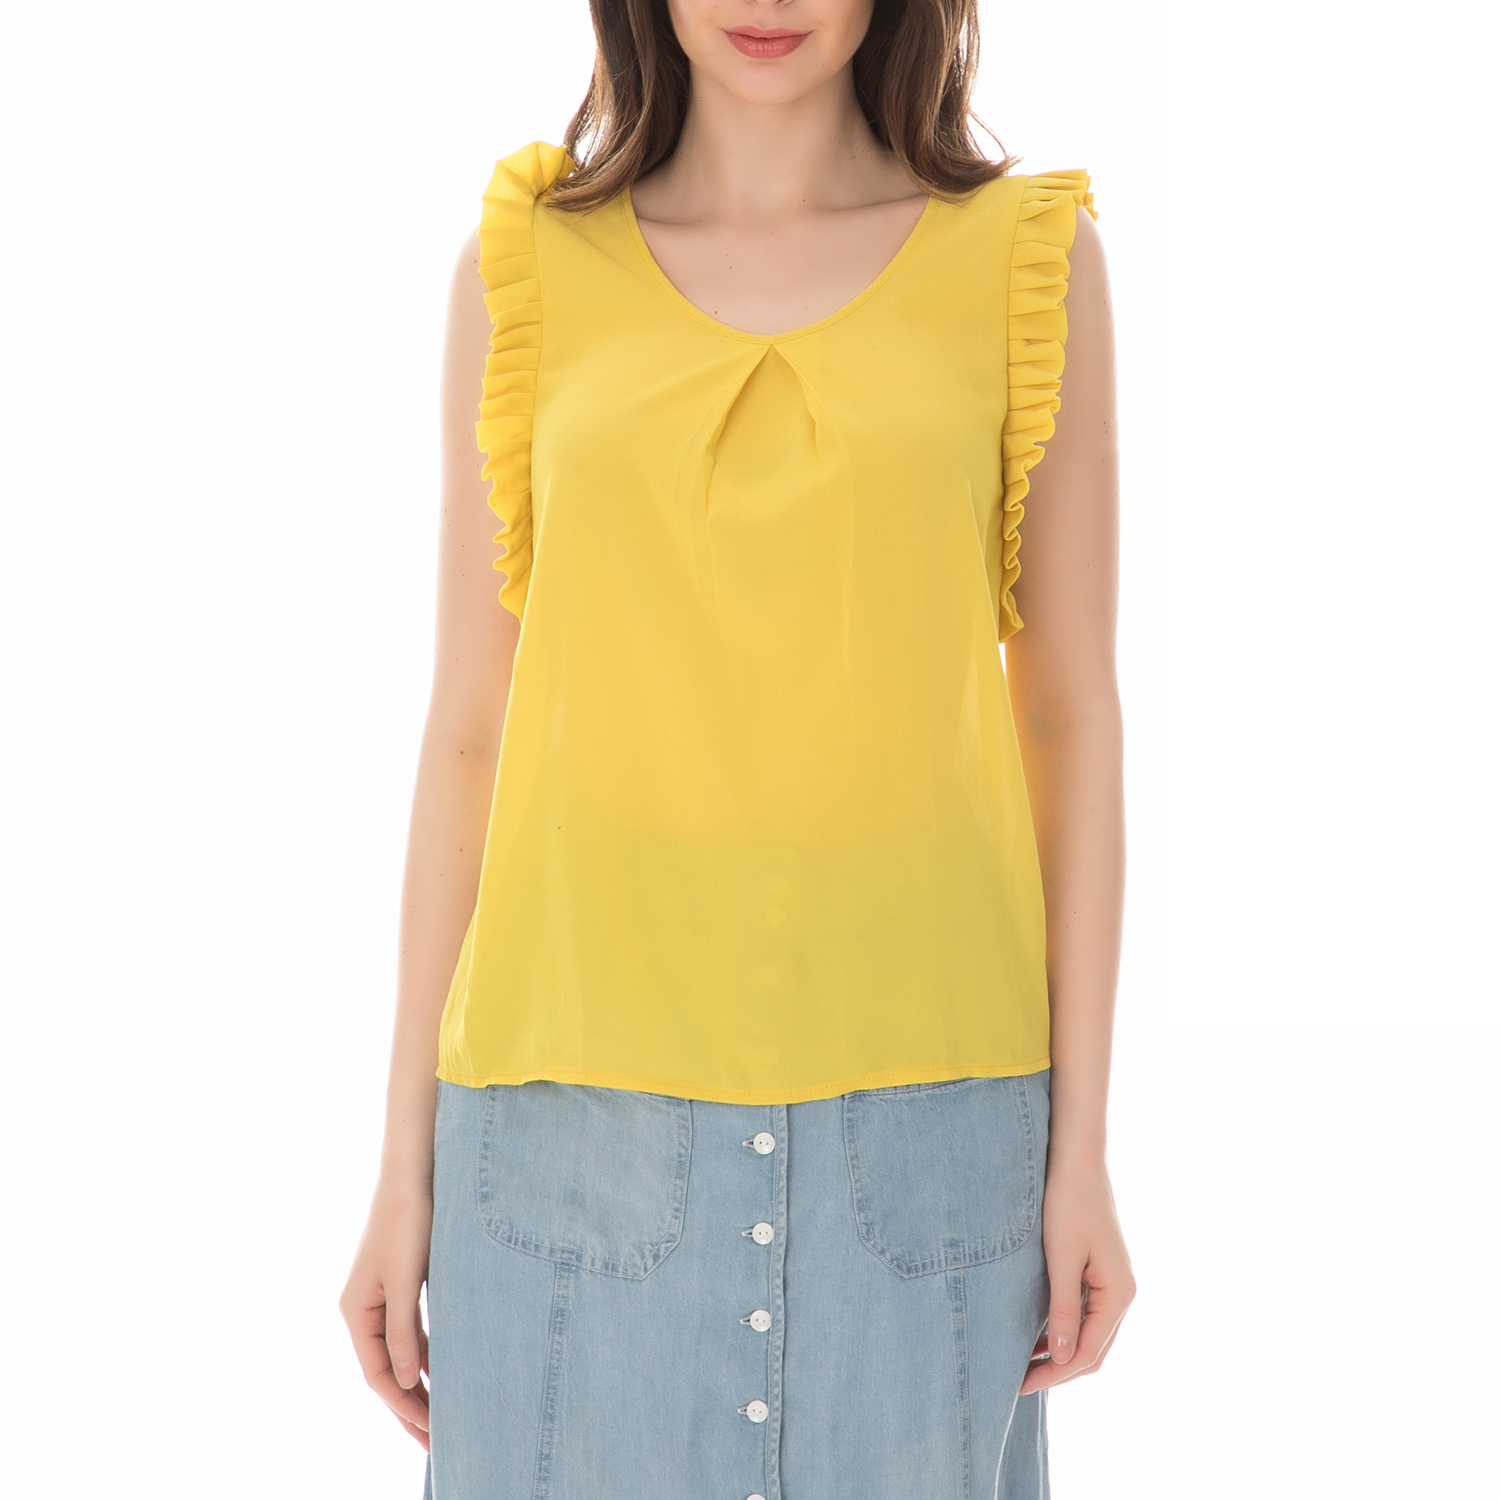 Γυναικεία/Ρούχα/Μπλούζες/Αμάνικες MOLLY BRACKEN - Γυναικεία αμάνικη μπλούζα MOLLY BRACKEN κίτρινη